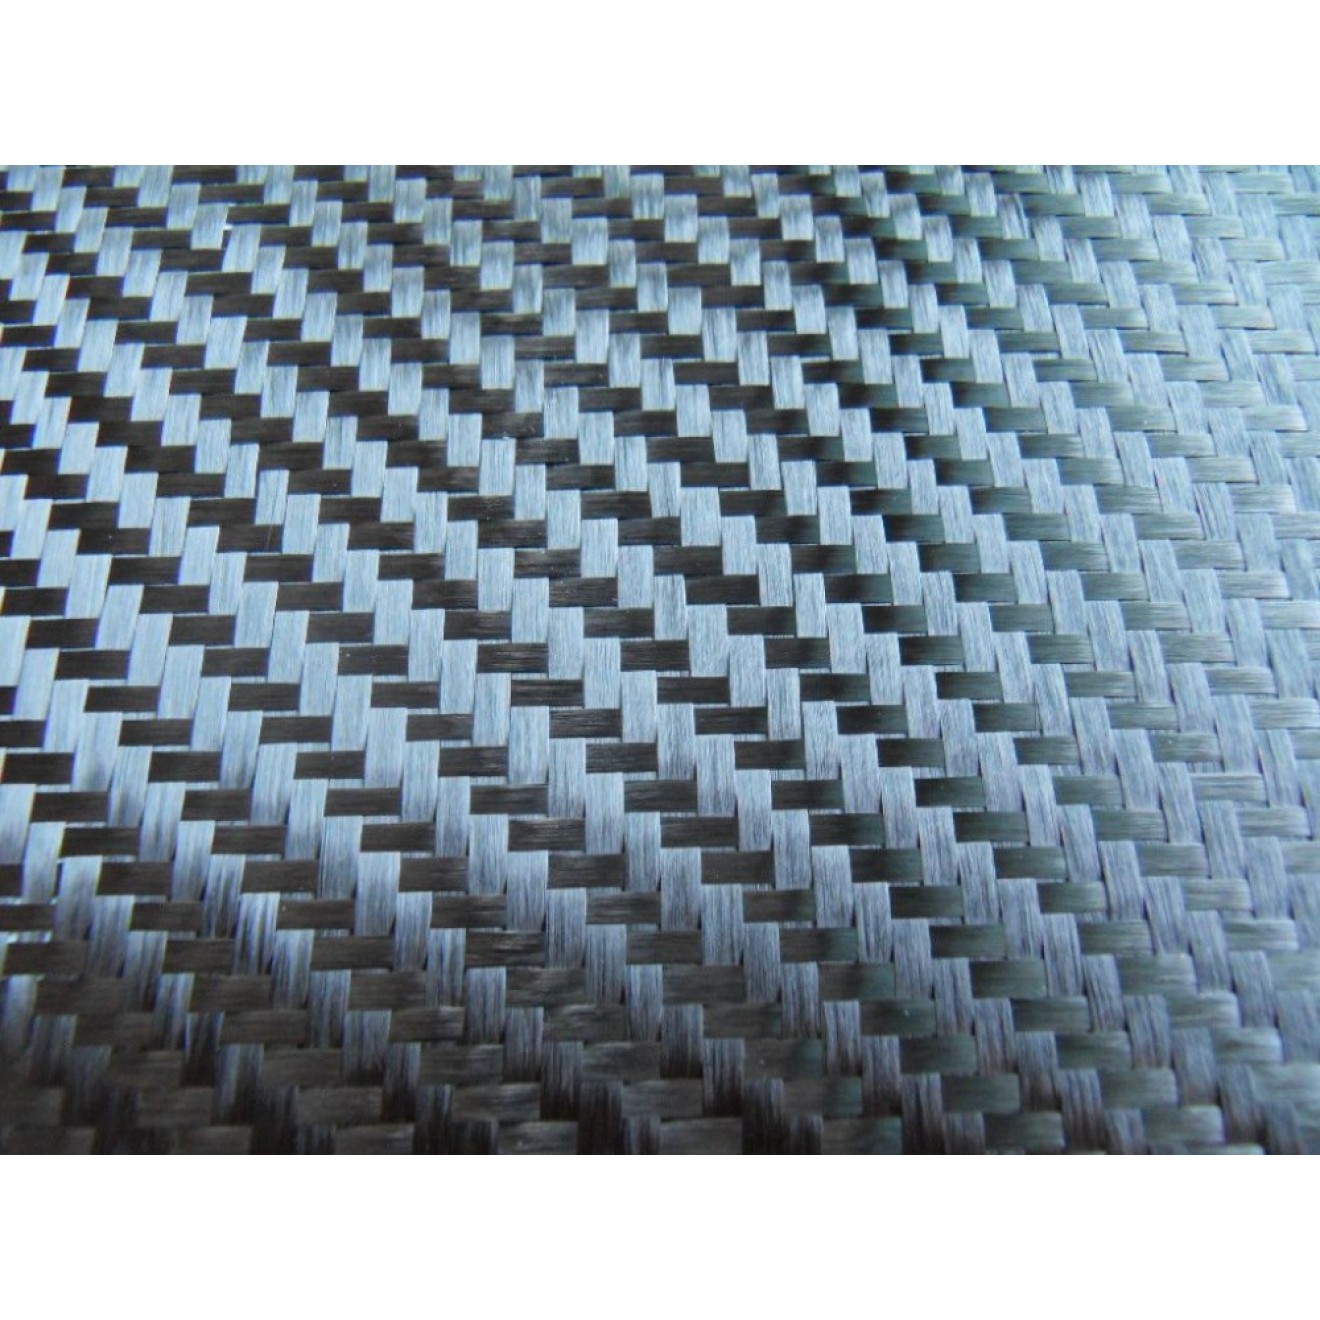 ECCellent Woven carbon fiber fabric, 200g/m² twill weave spread